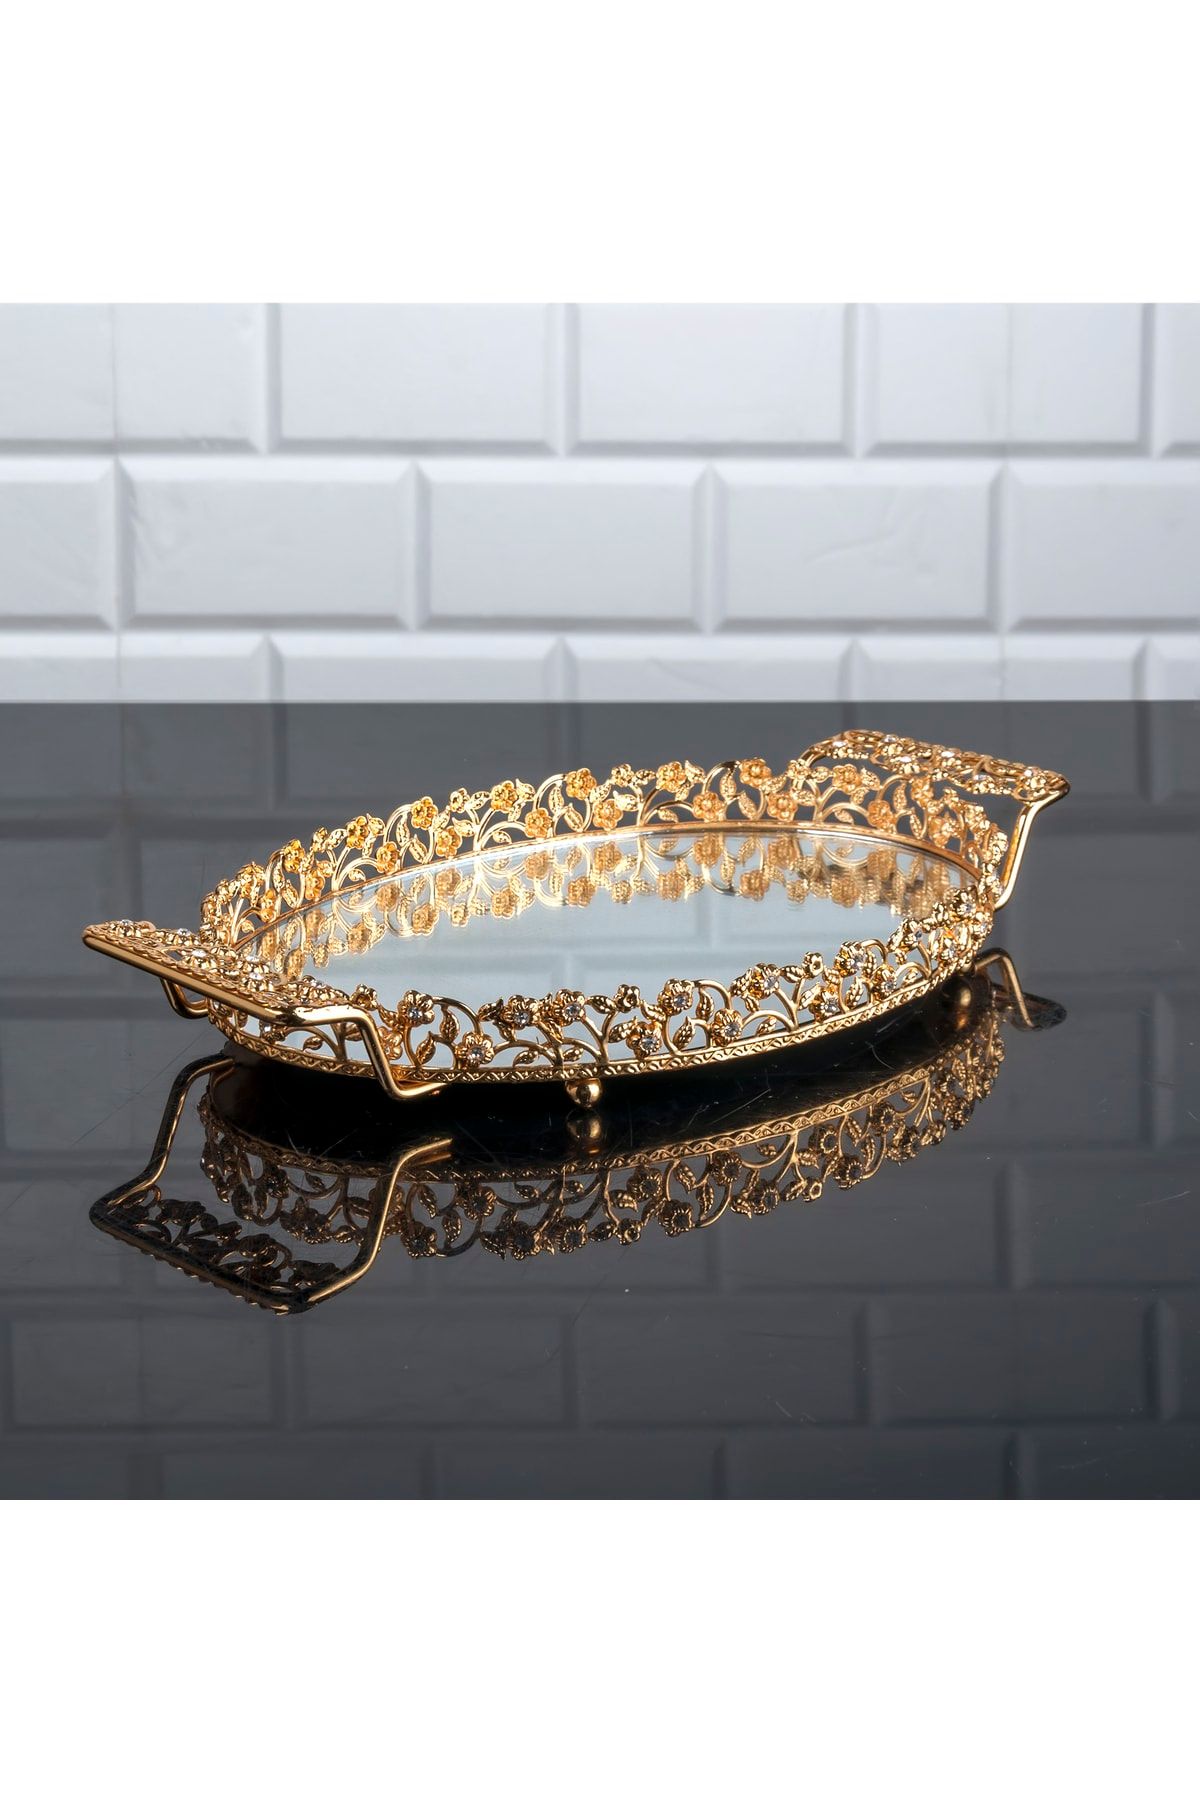 Zeyve Home Elmas Oval Küçük Tepsi Aynalı Metal Kulplu Kahve Sunumluk Çikolata Tepsisi Altın